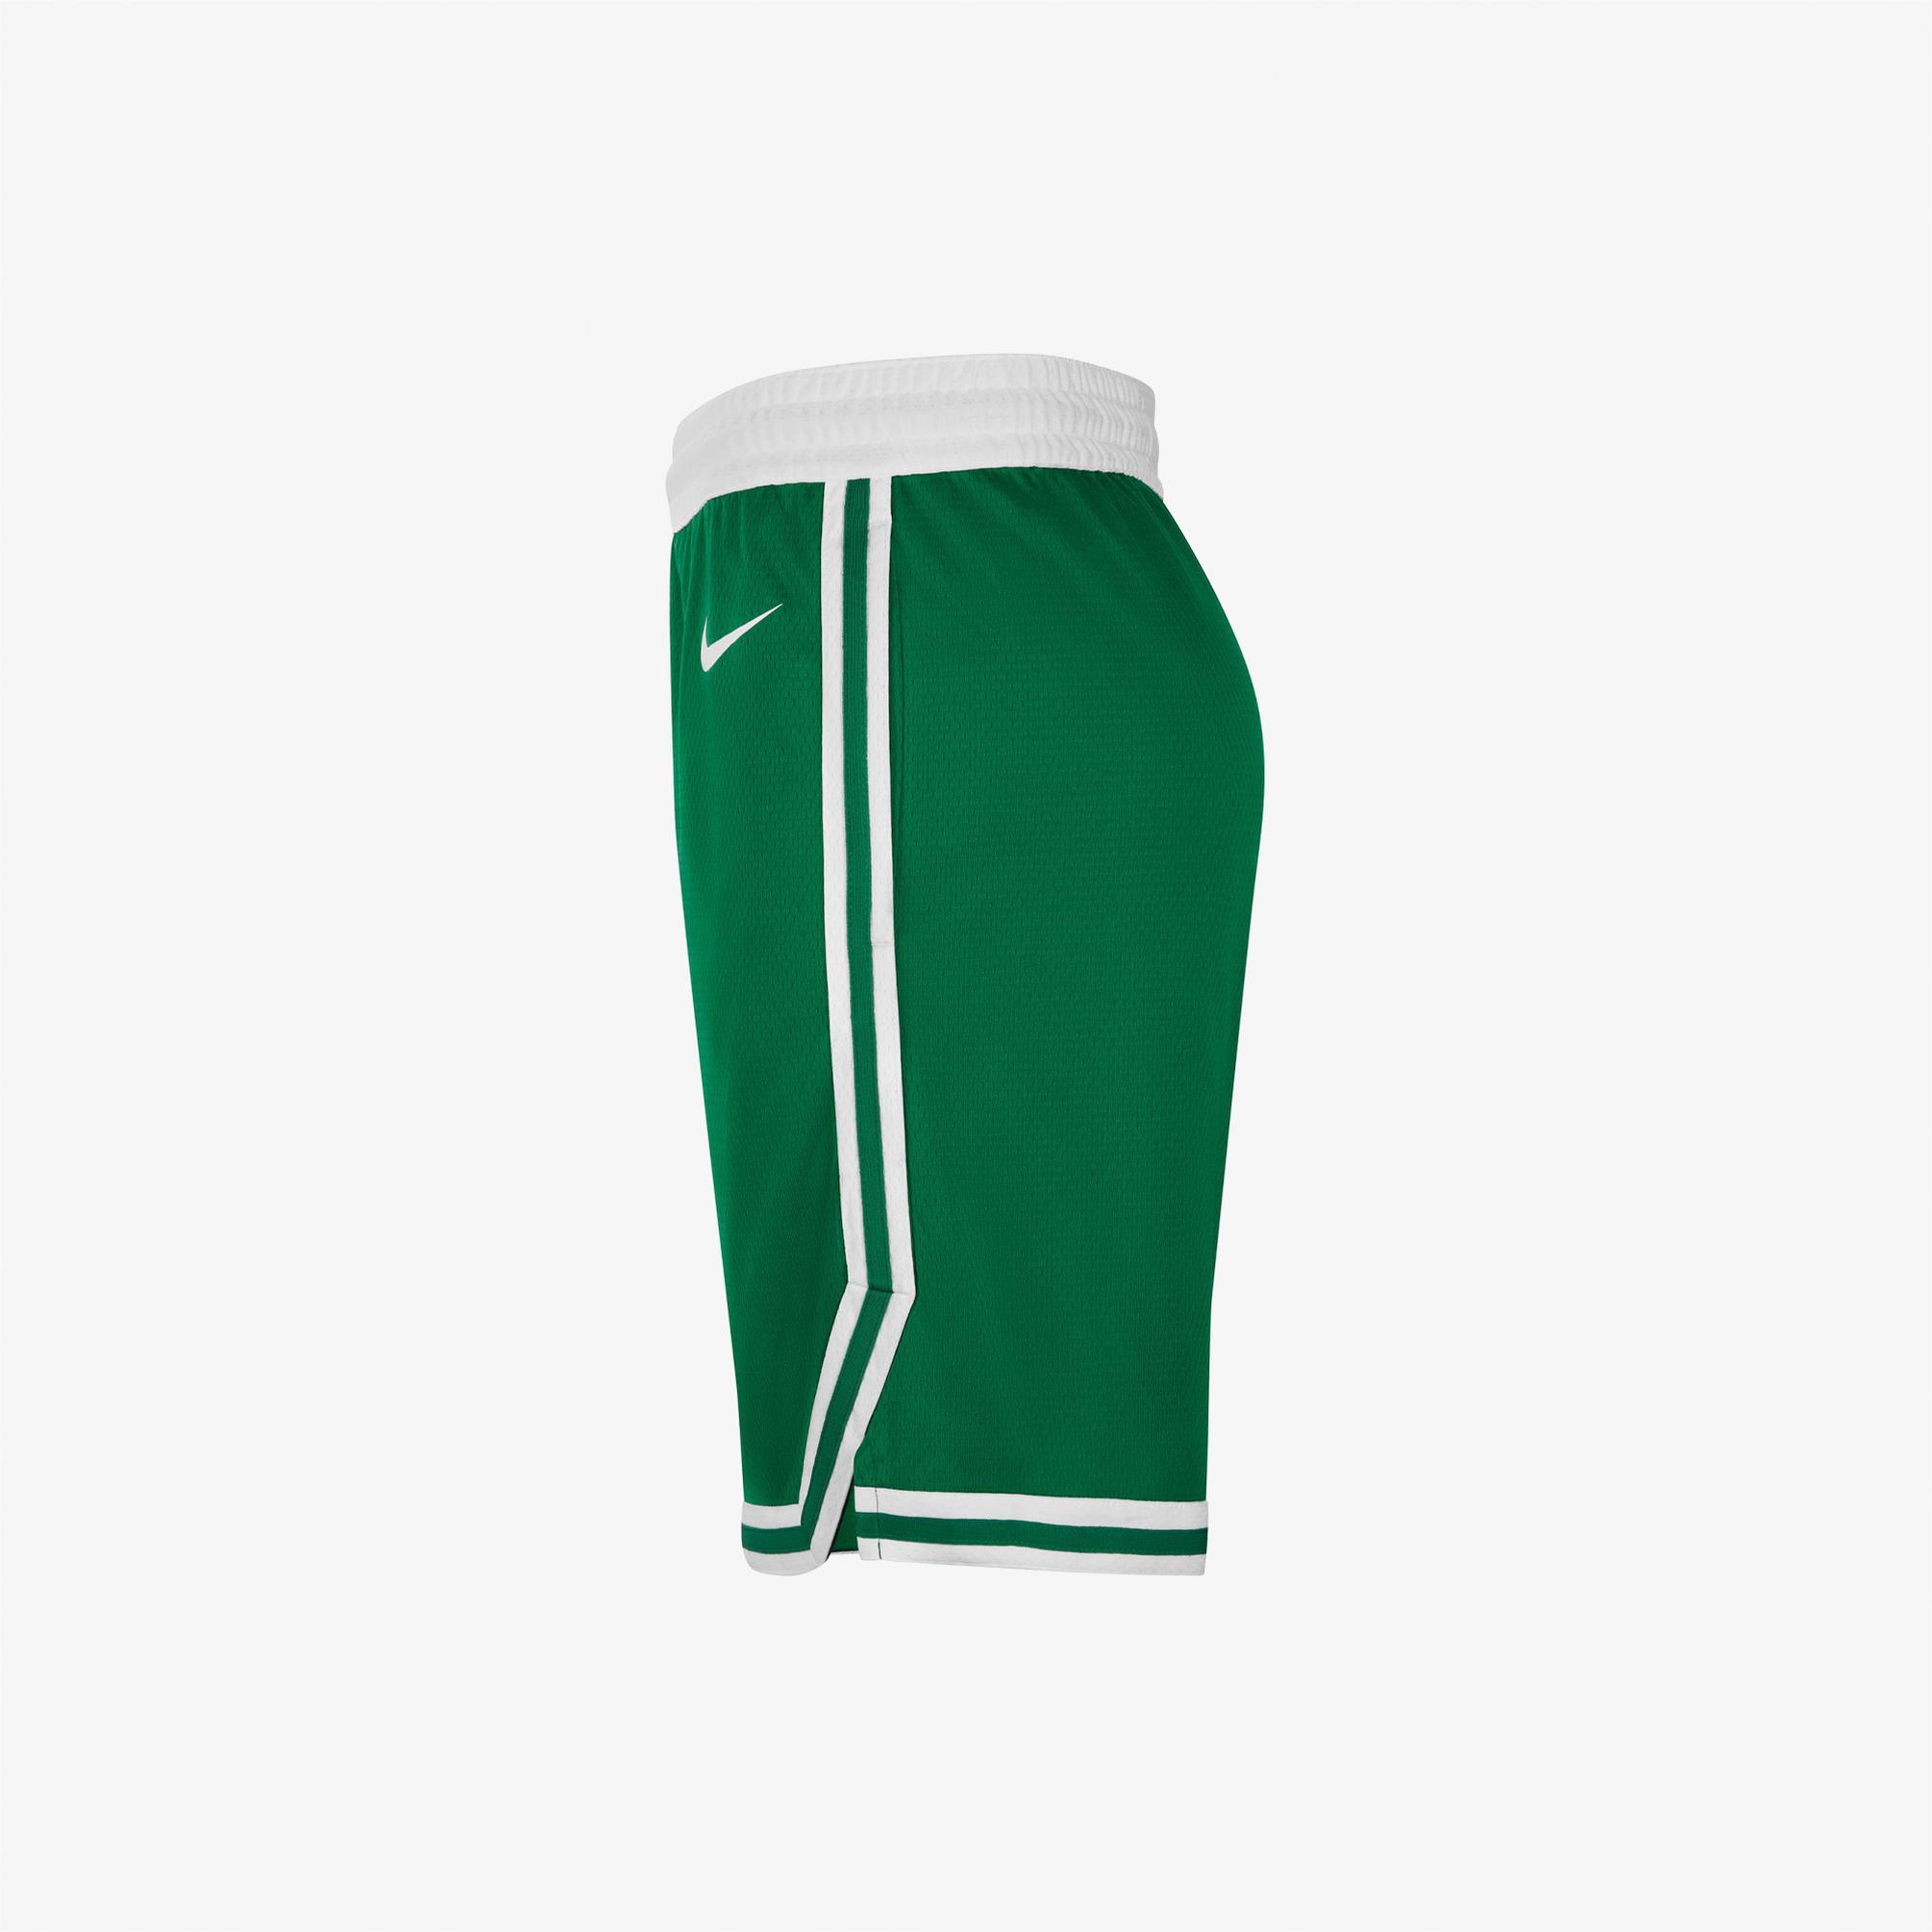  Nike Boston Celtics Swingman Erkek Yeşil Şort